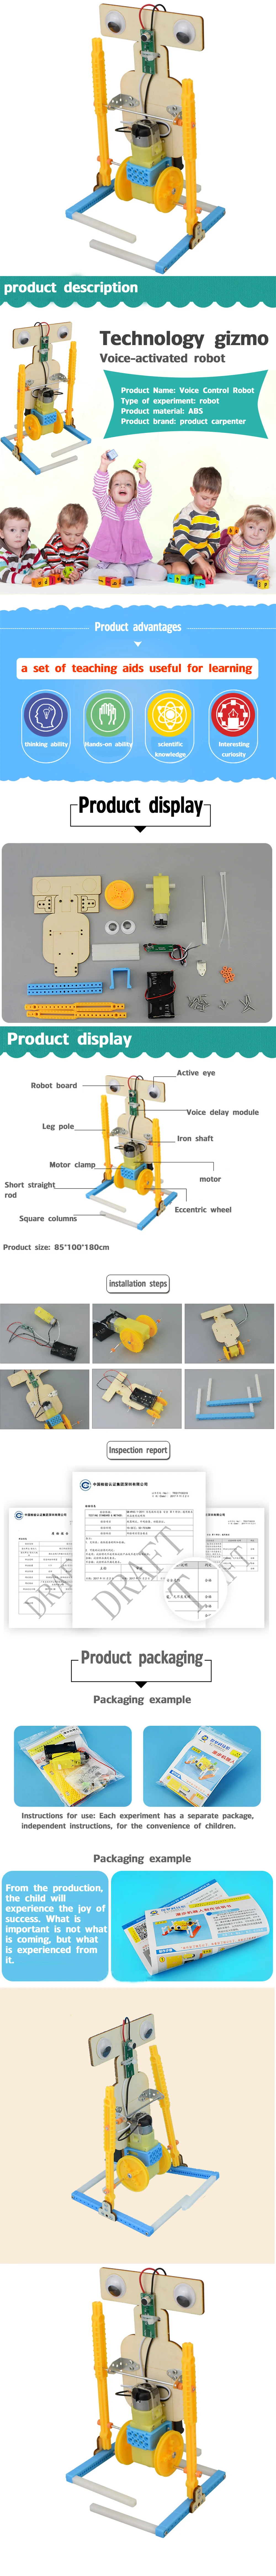 Технология мелкого производства мальчик домашний diy голосовой контроль робот начальной школы научный обучающий игрушечный материал